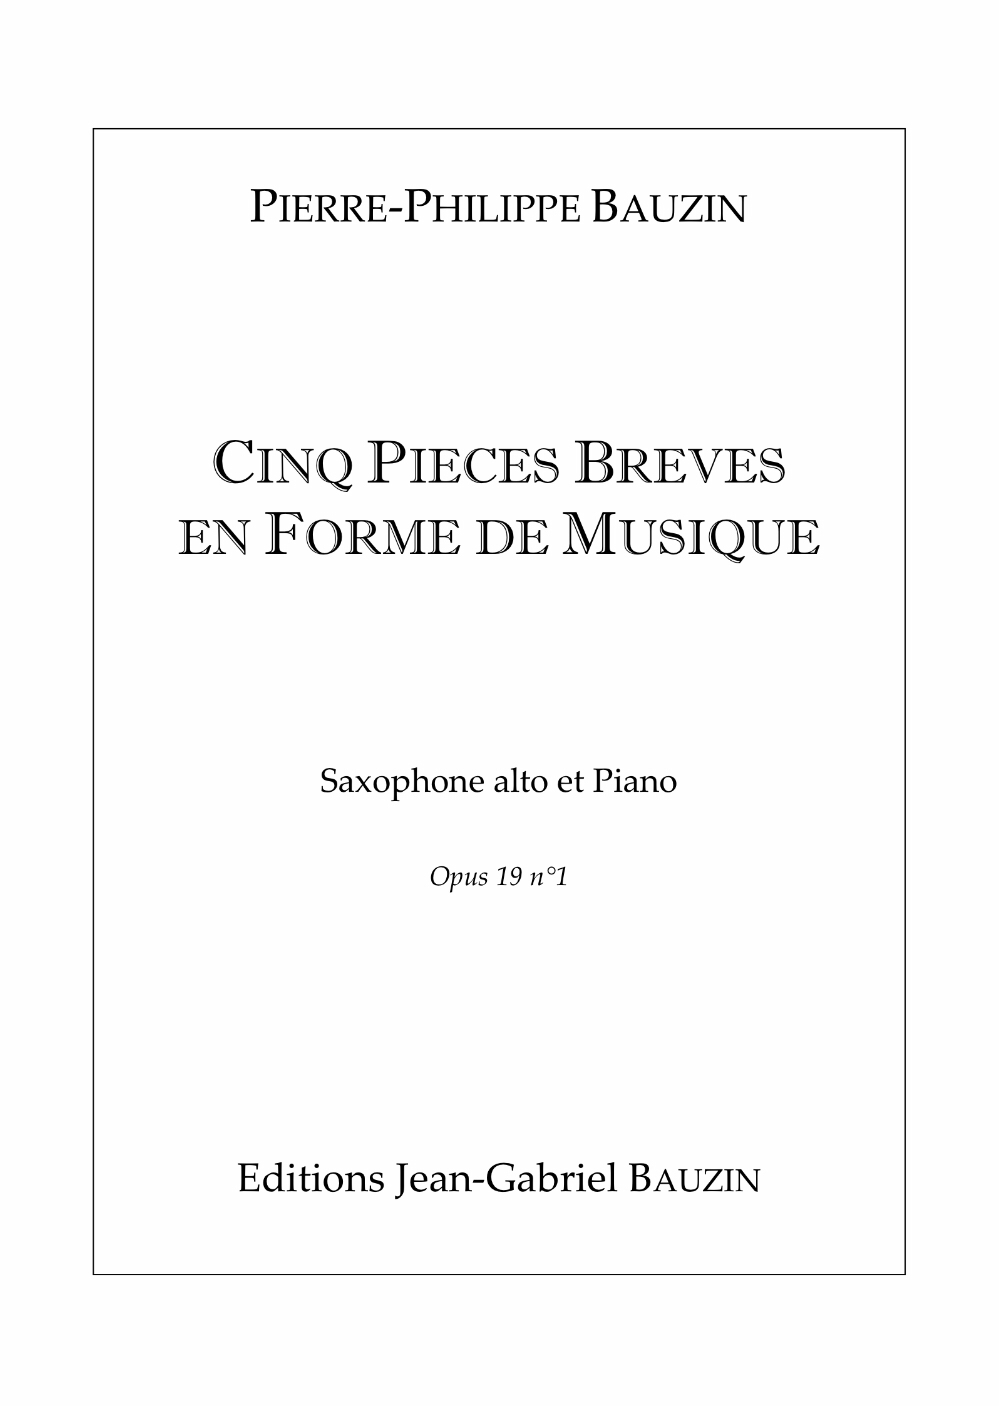 Cinq Pieces by Pierre-Philippe Bauzin